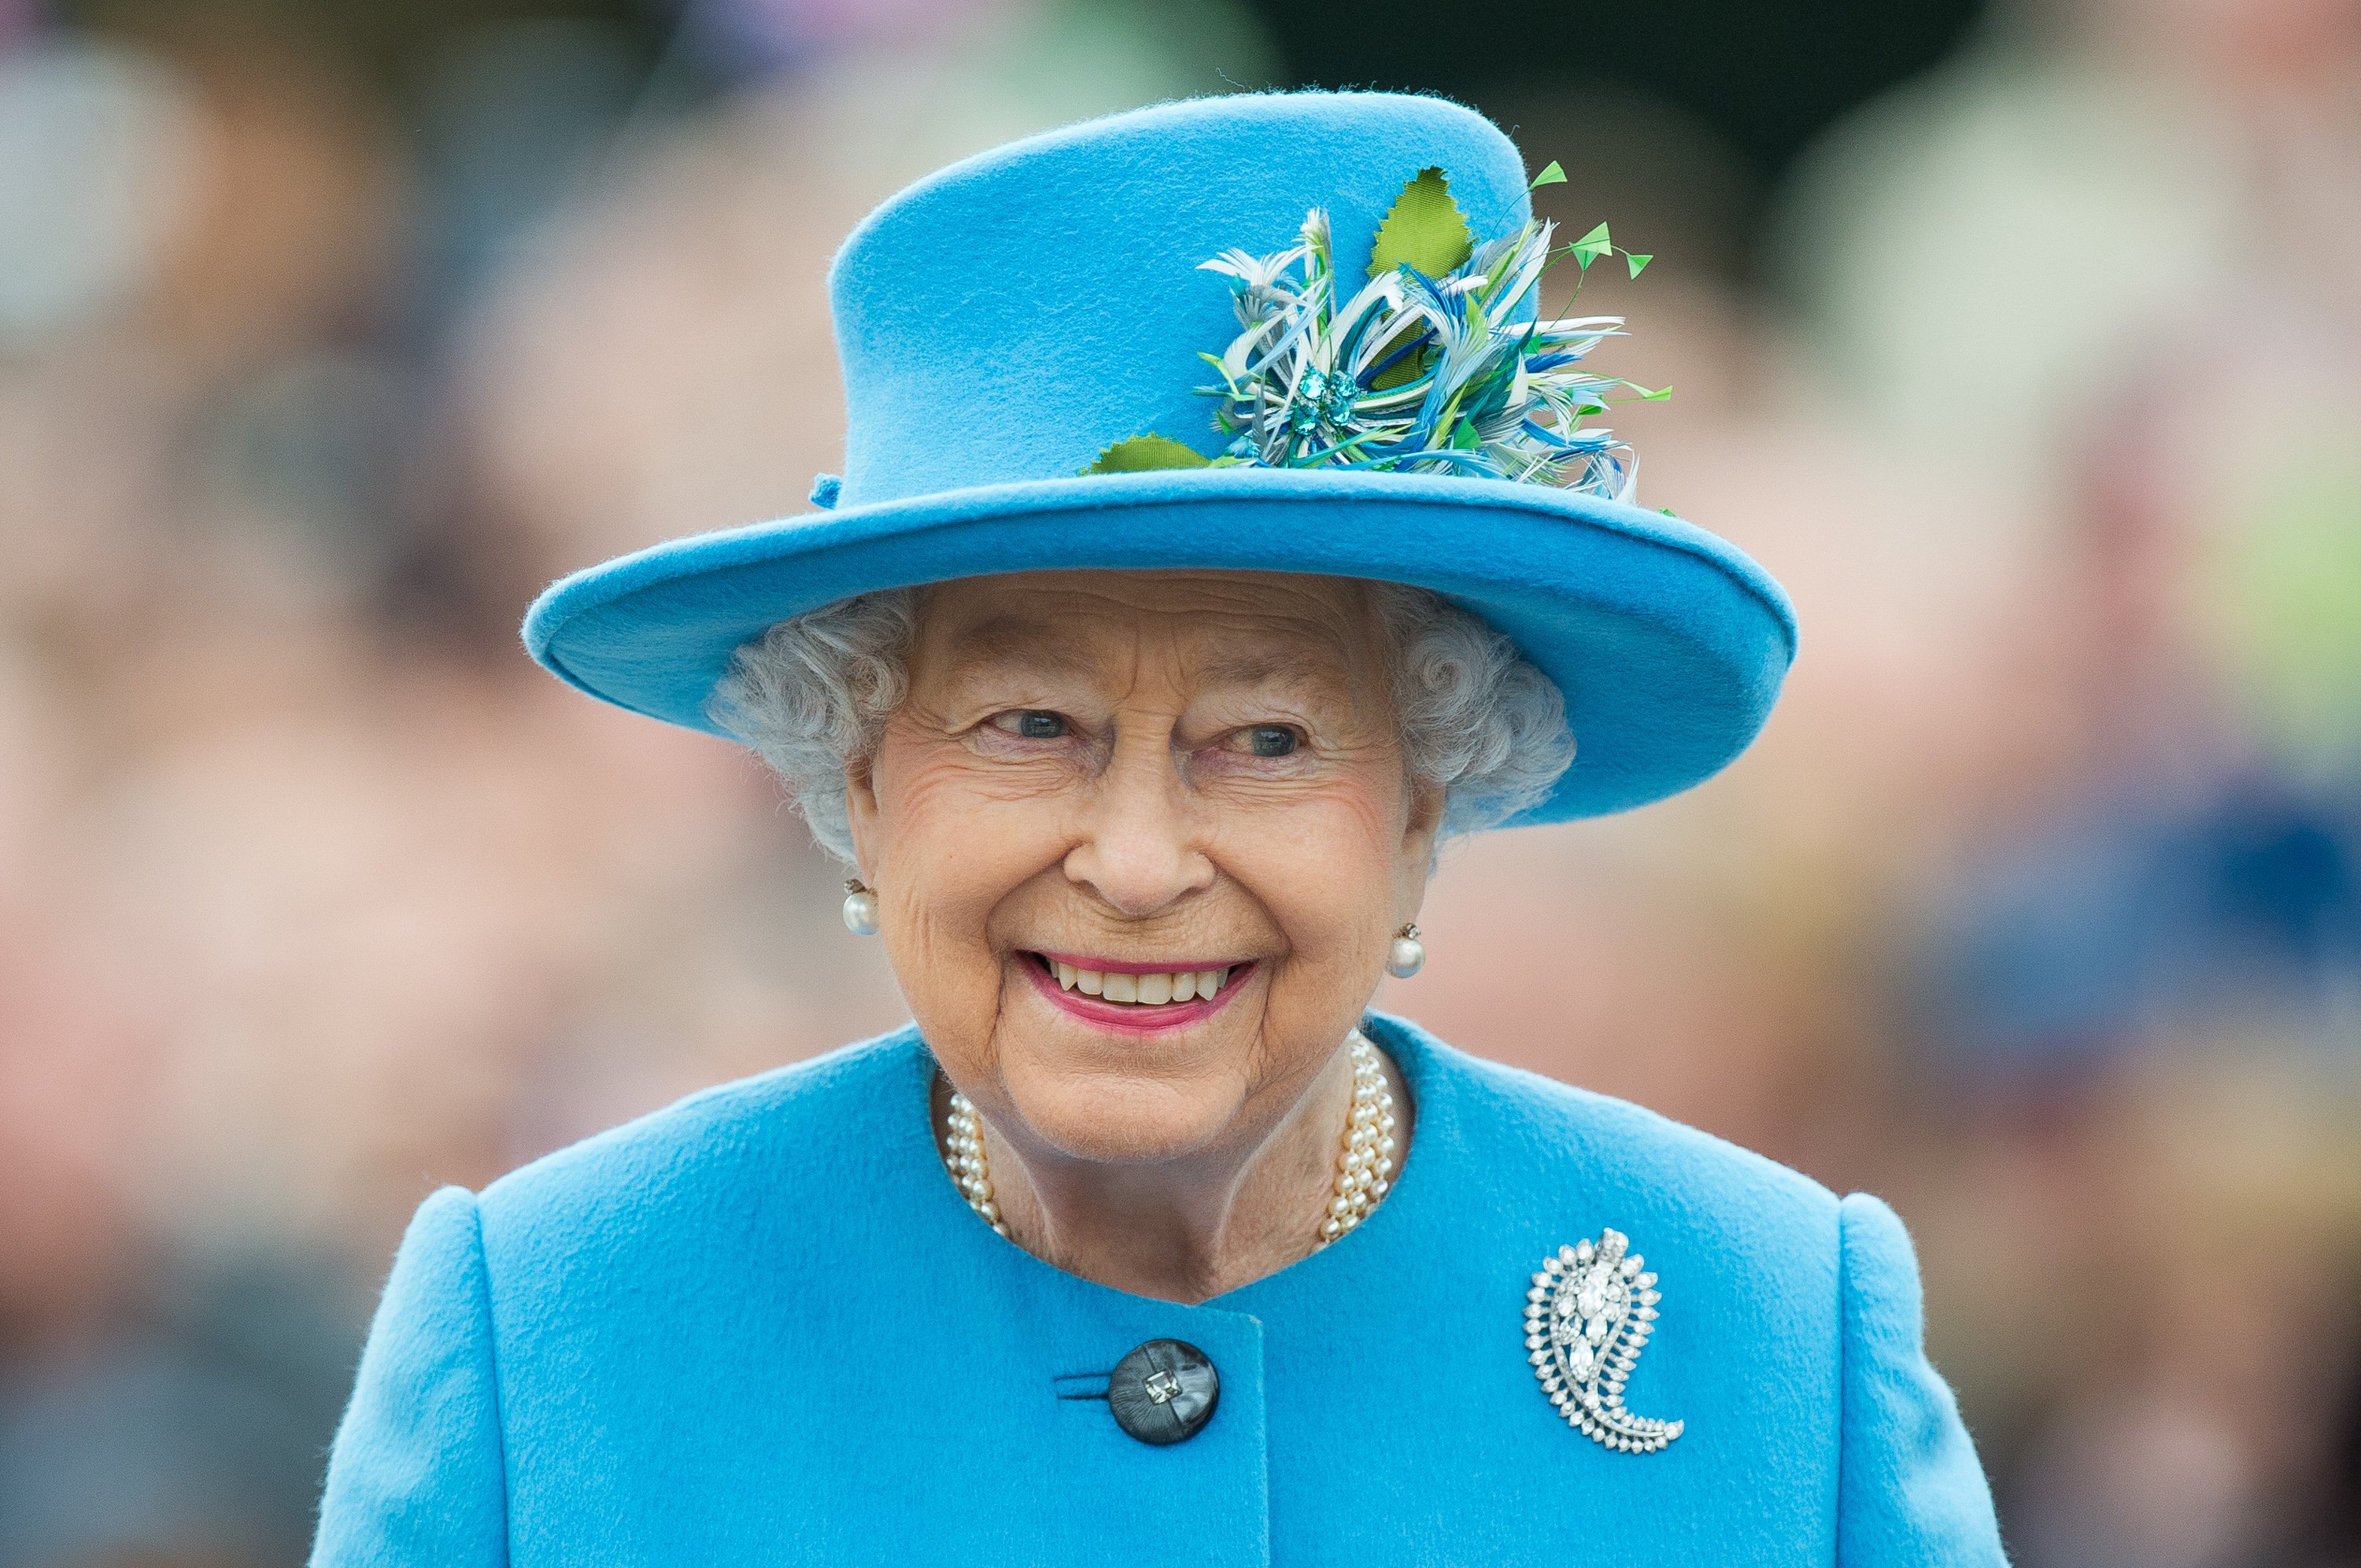 Kraliçe II. Elizabeth, 27 Ekim 2016'da Dorset, Poundbury'de Kraliçe Anne Meydanı'nı gezdi.  |  Kaynak: Getty Images